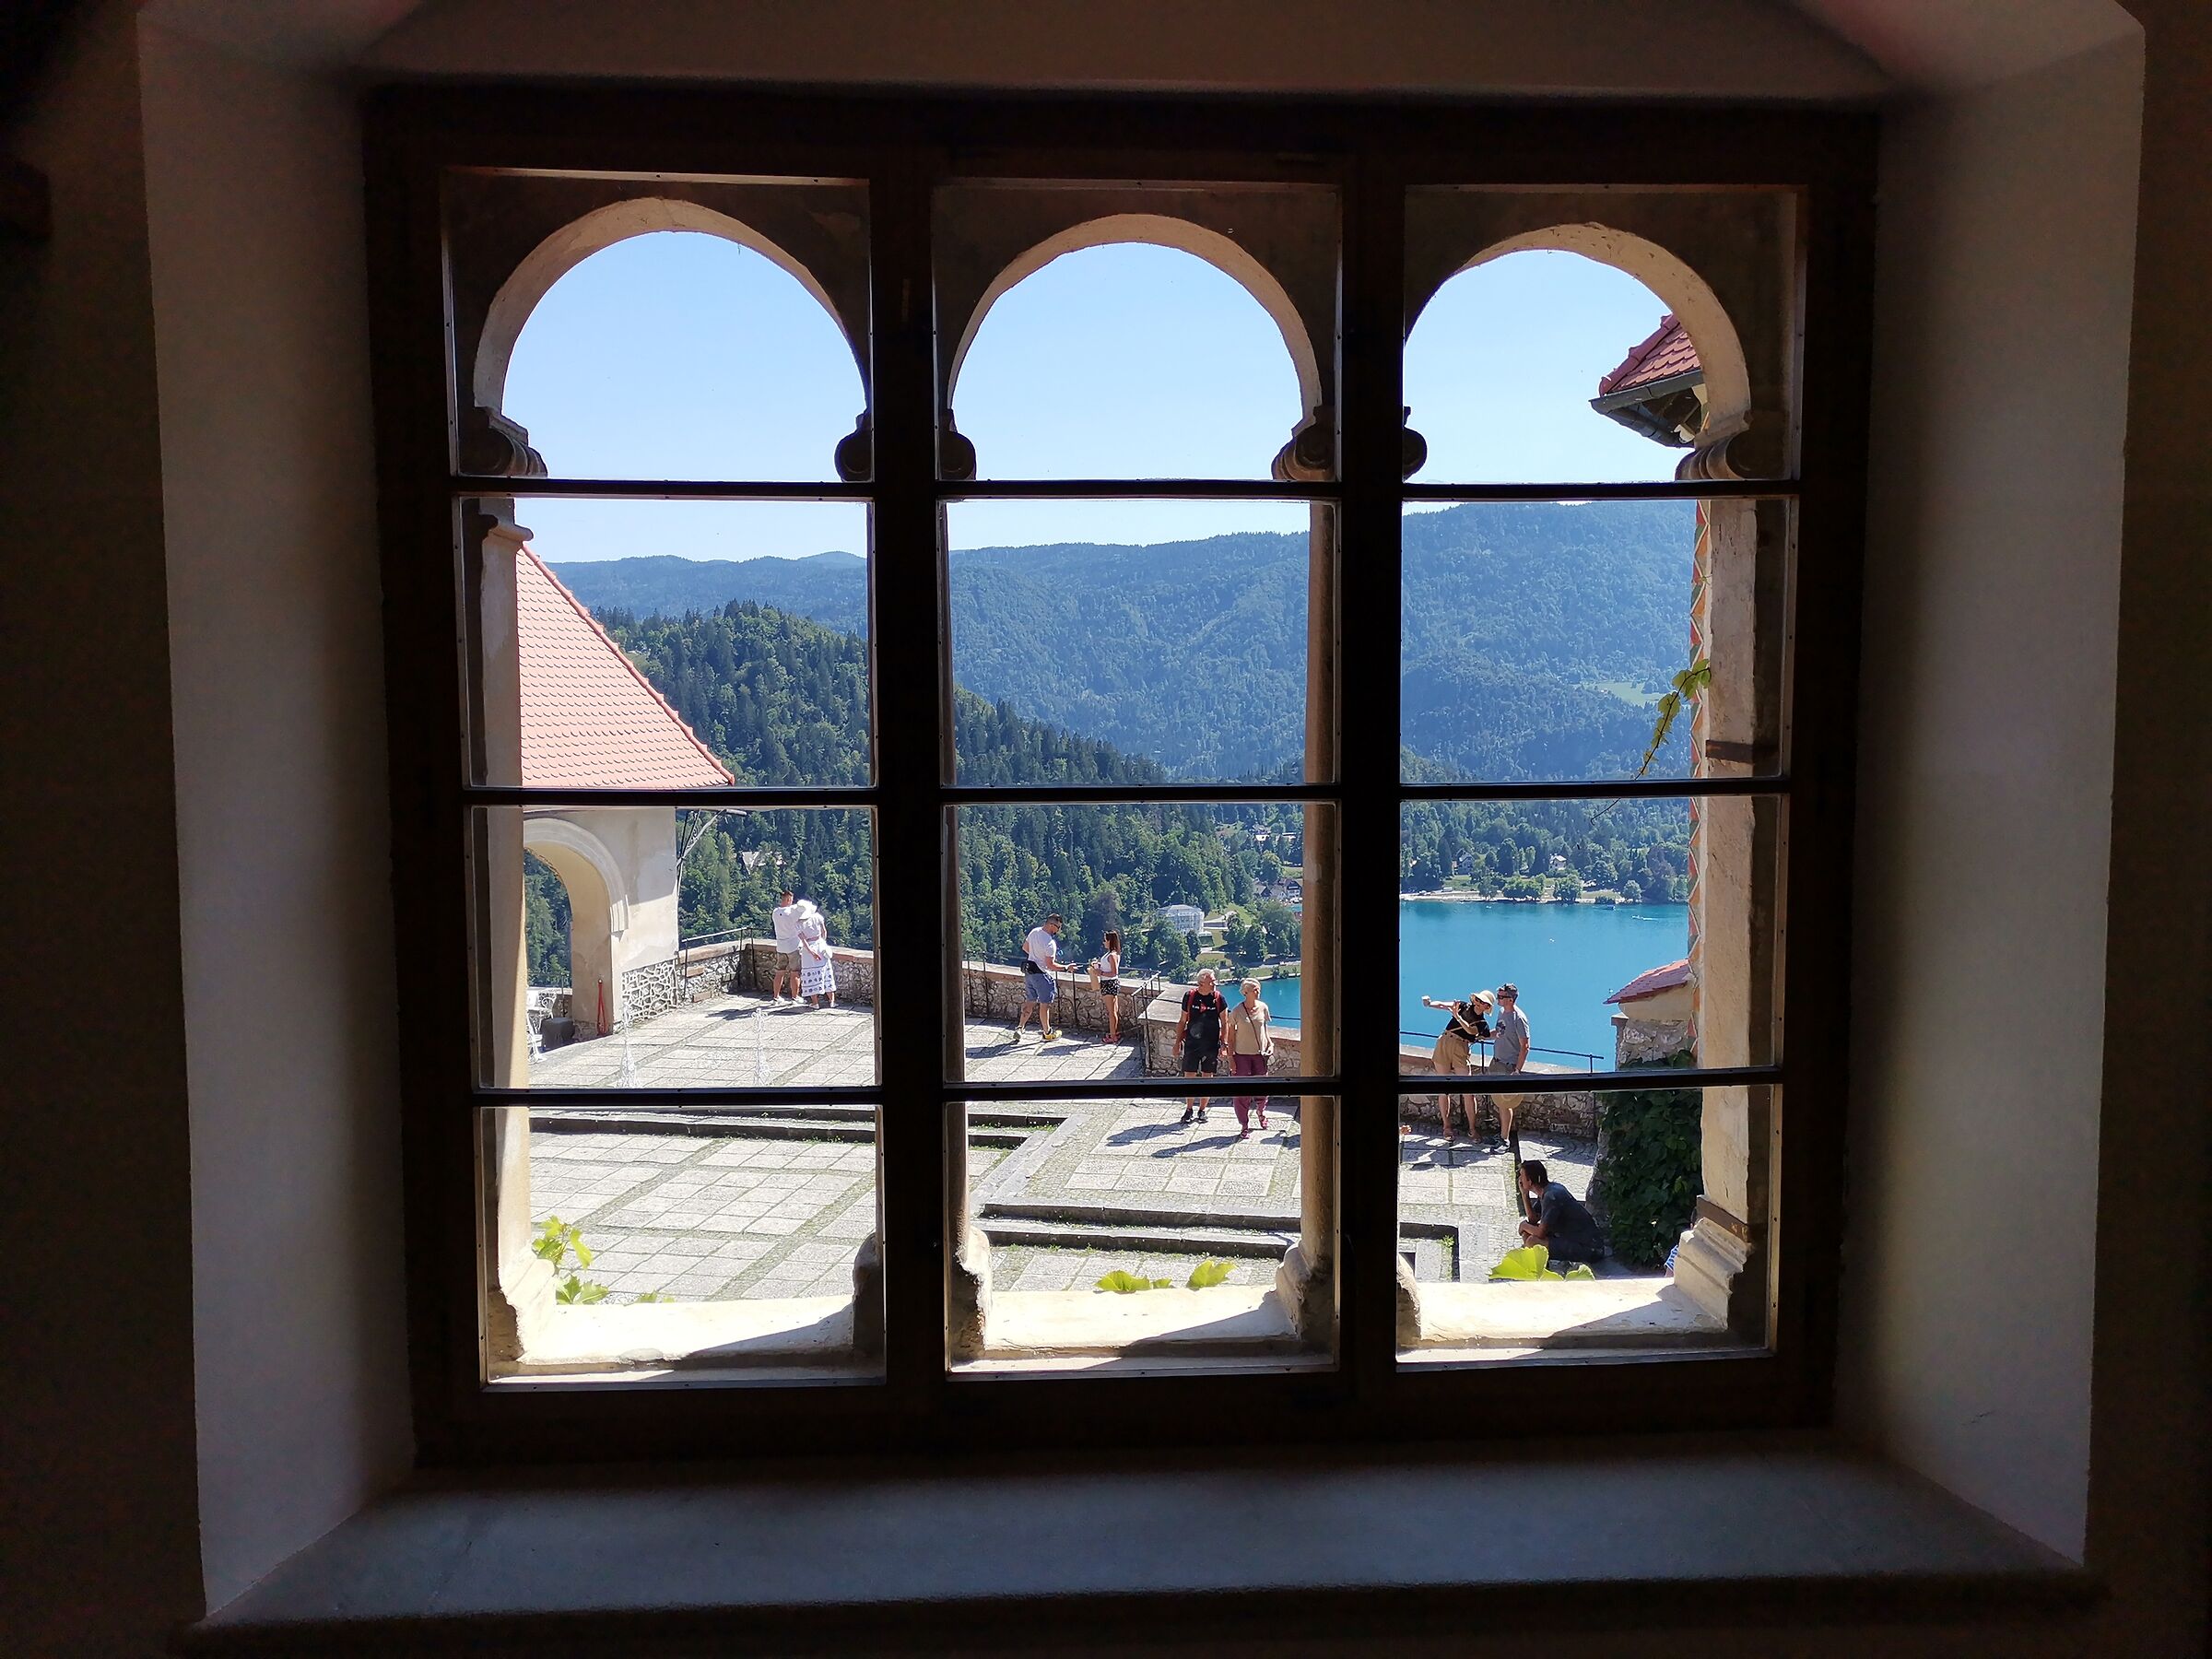 At Bled Castle...